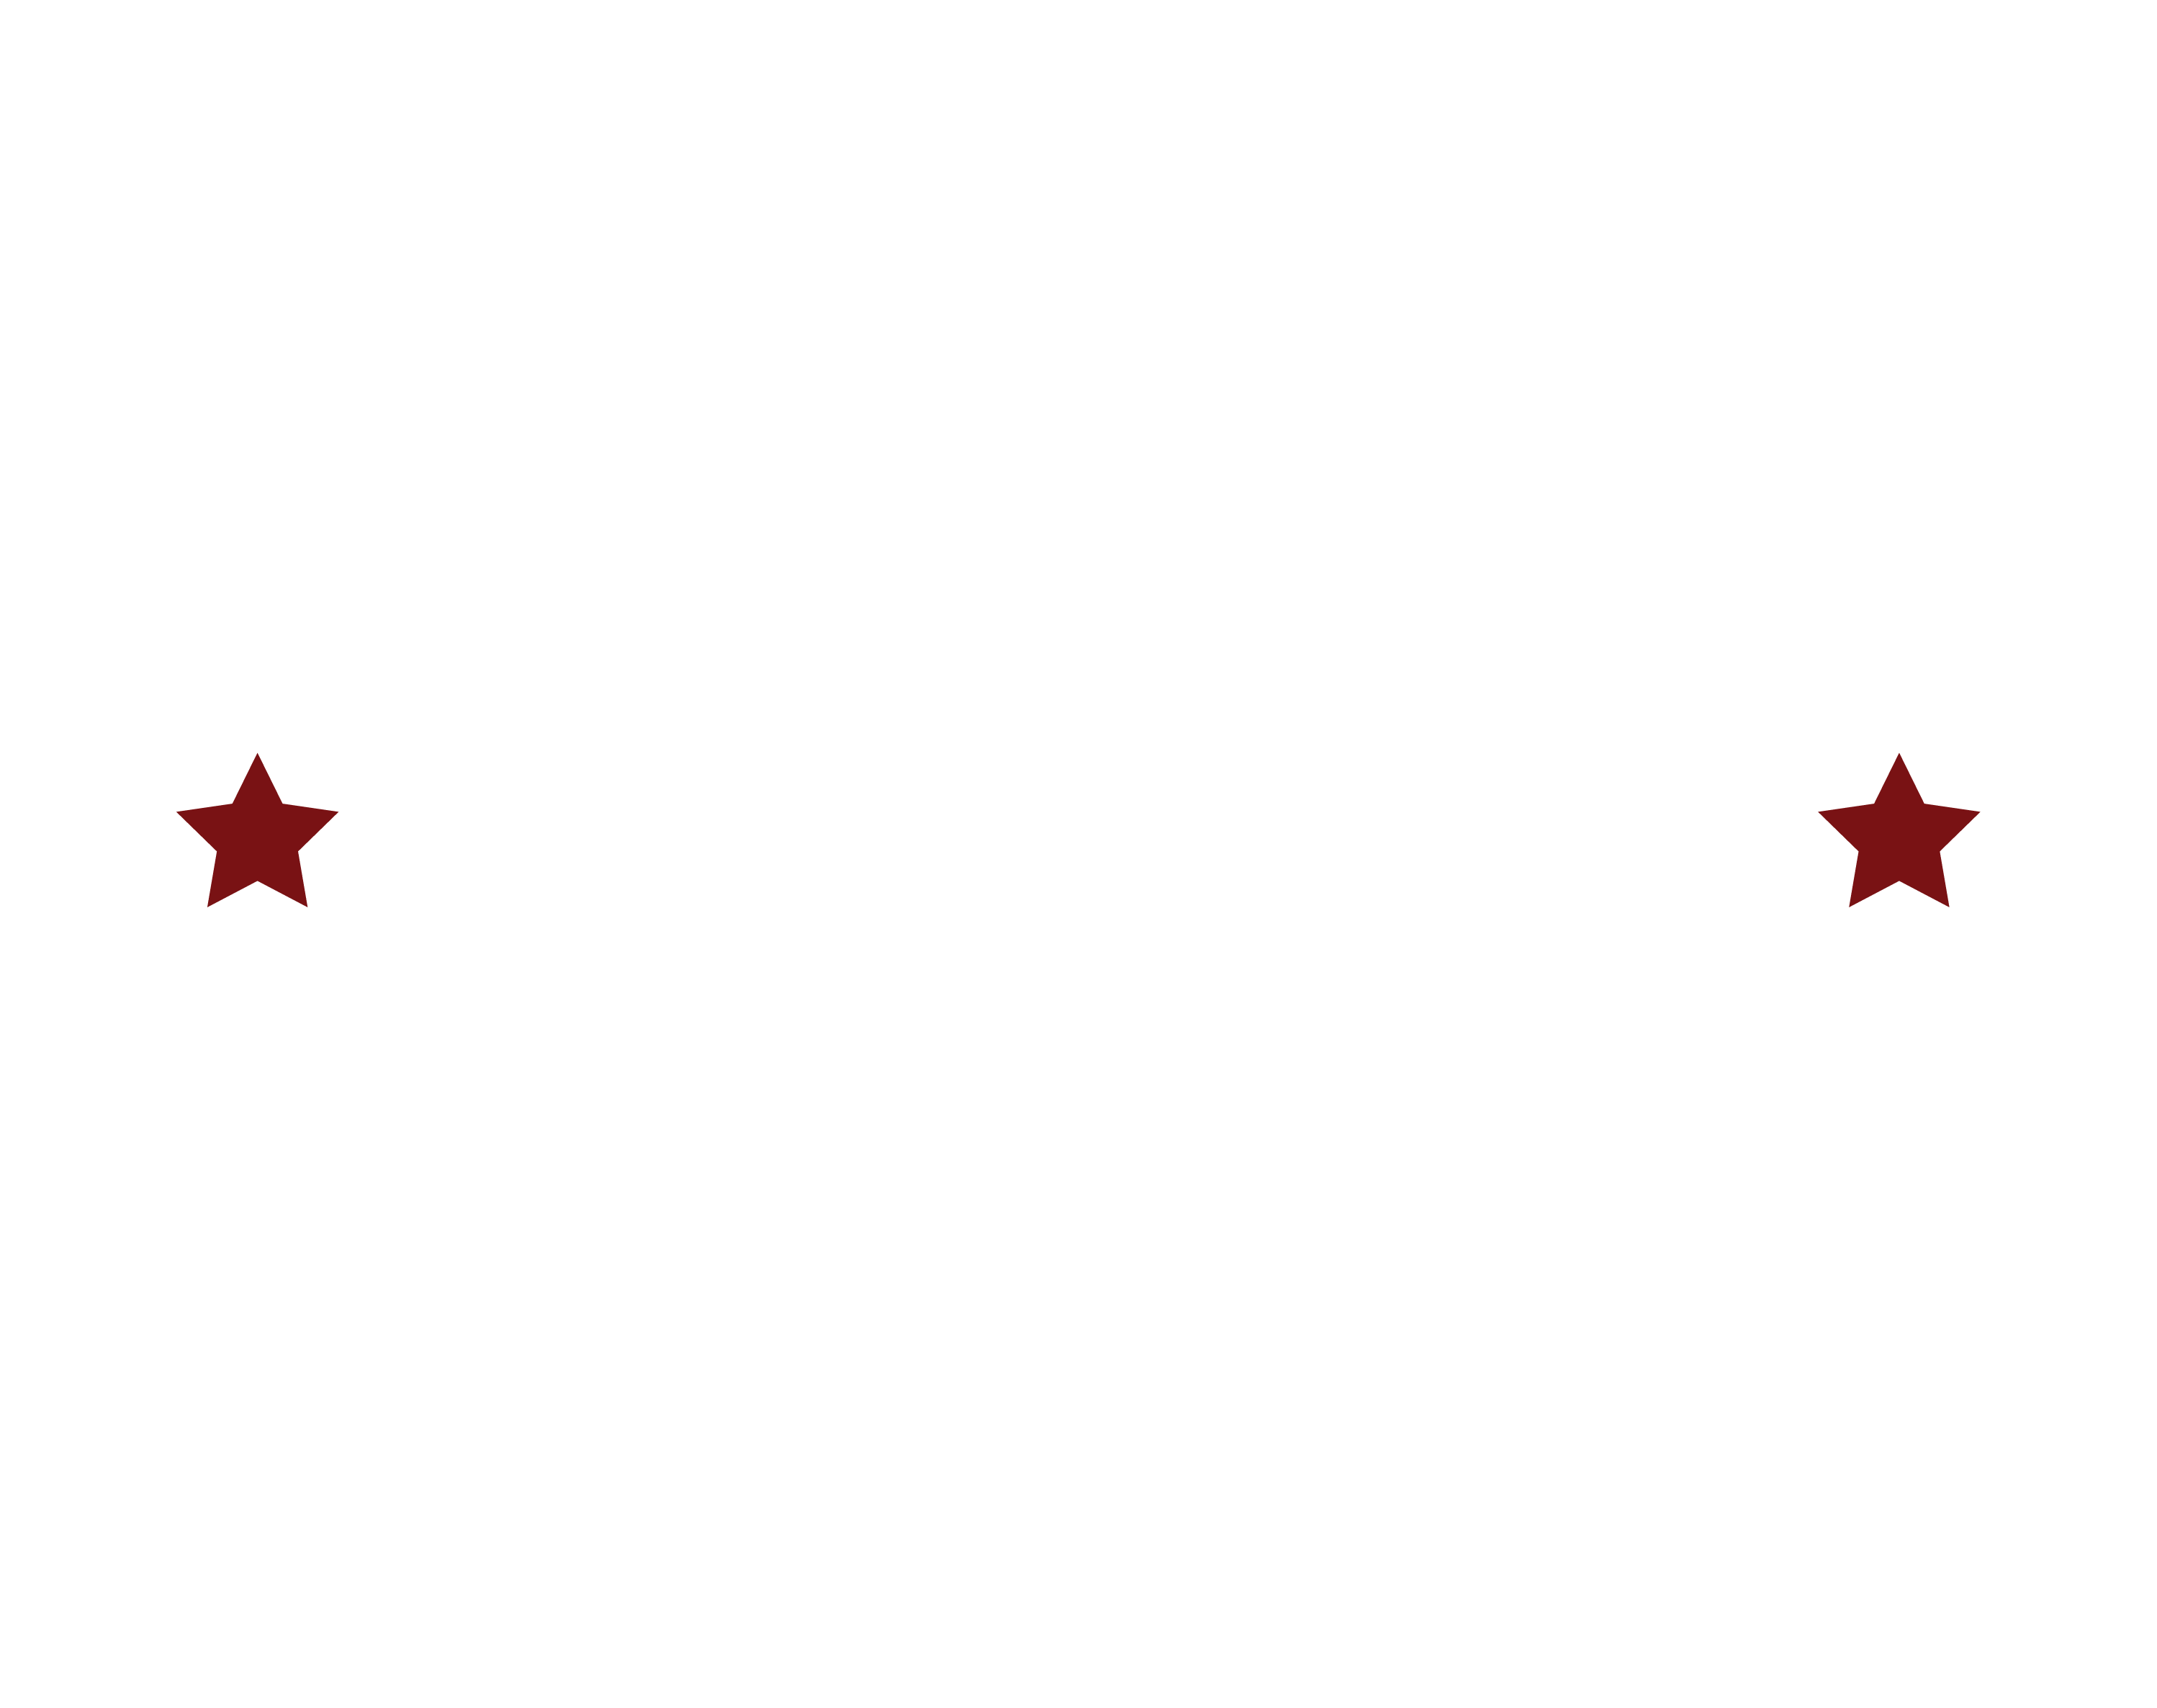 Radical Panda Logo